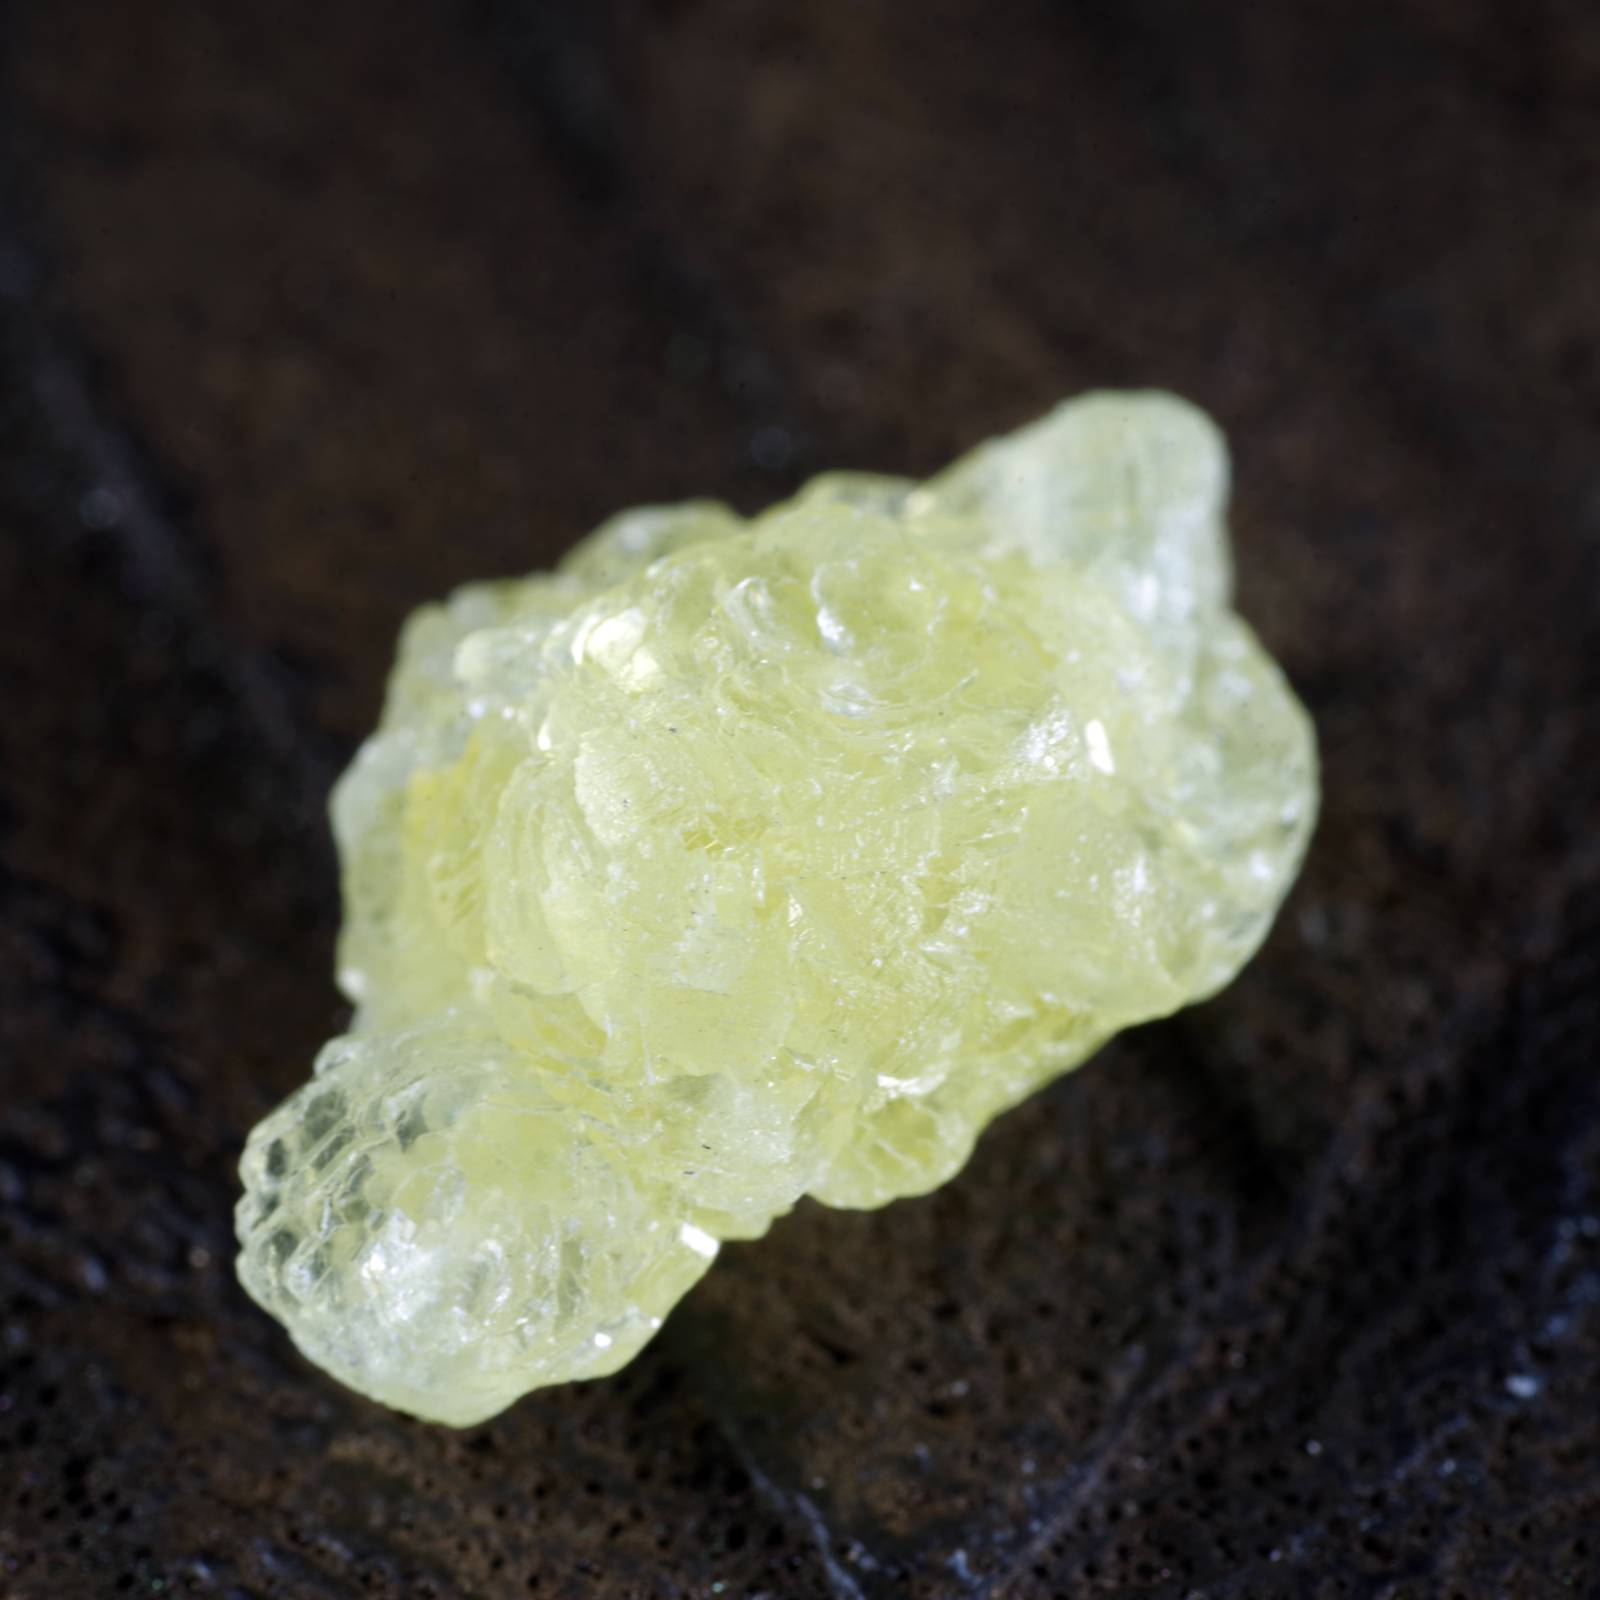 プレナイト ぶどう石 黄色 タンザニア産2 PREHNITE Yellow Tanzania 原石 写真現物 動画あり